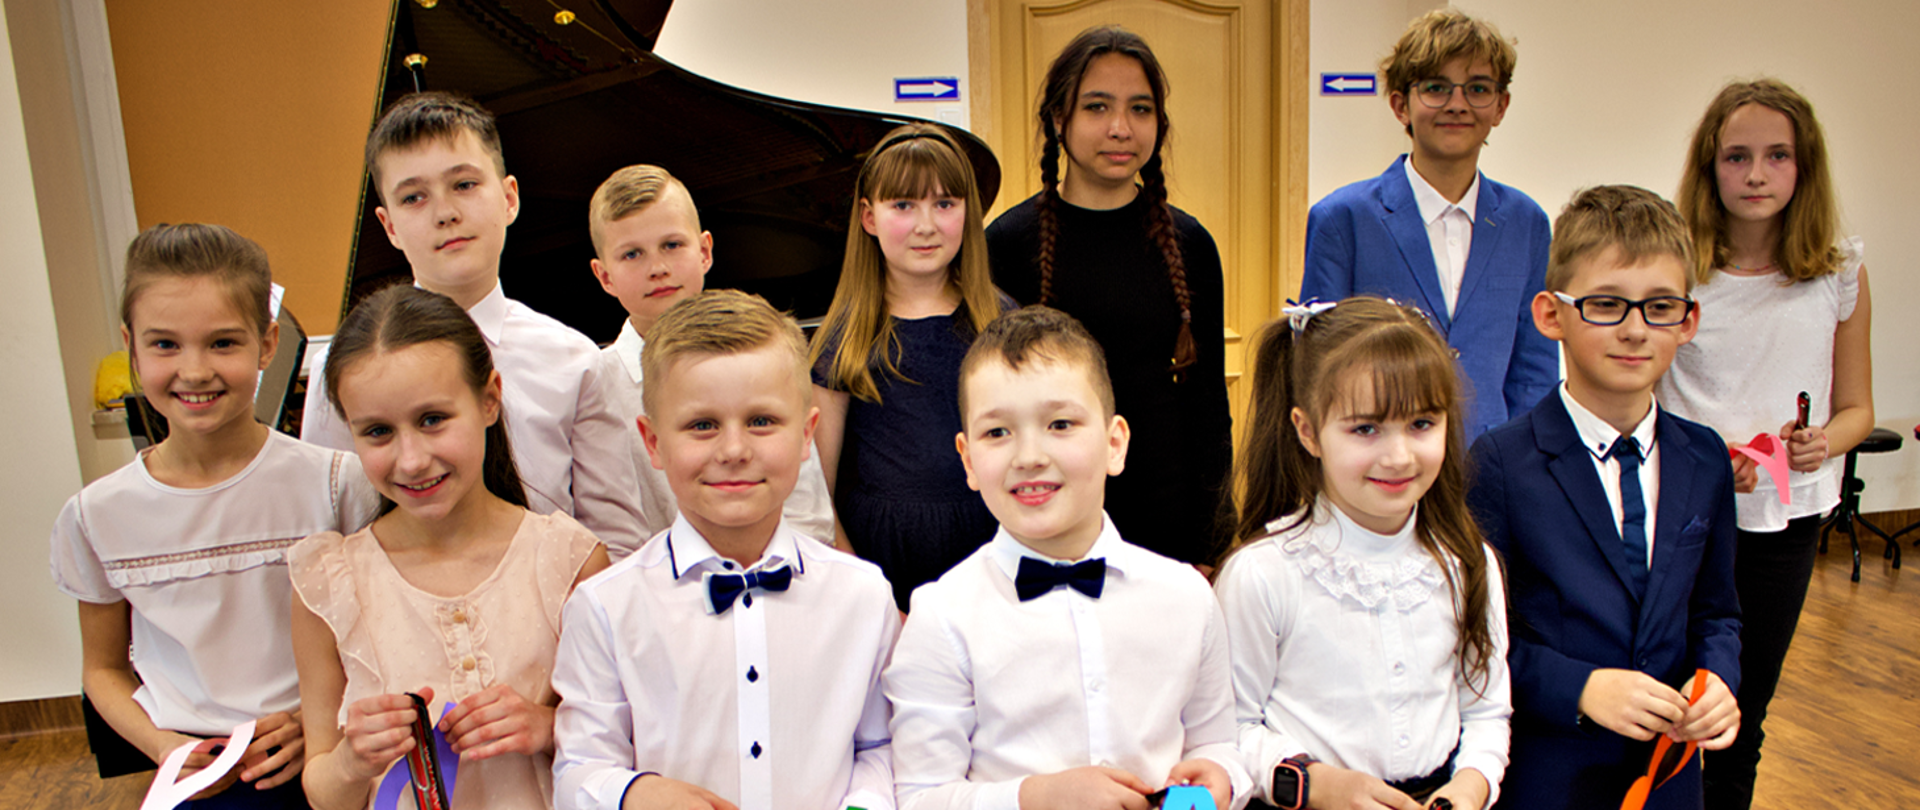 Na zdjęciu grupa 12 dzieci, dziewczynki i chłopcy,. stoją na tle fortepianu, w rękach trzymają kolorowe kotyliony i małe kamertony.